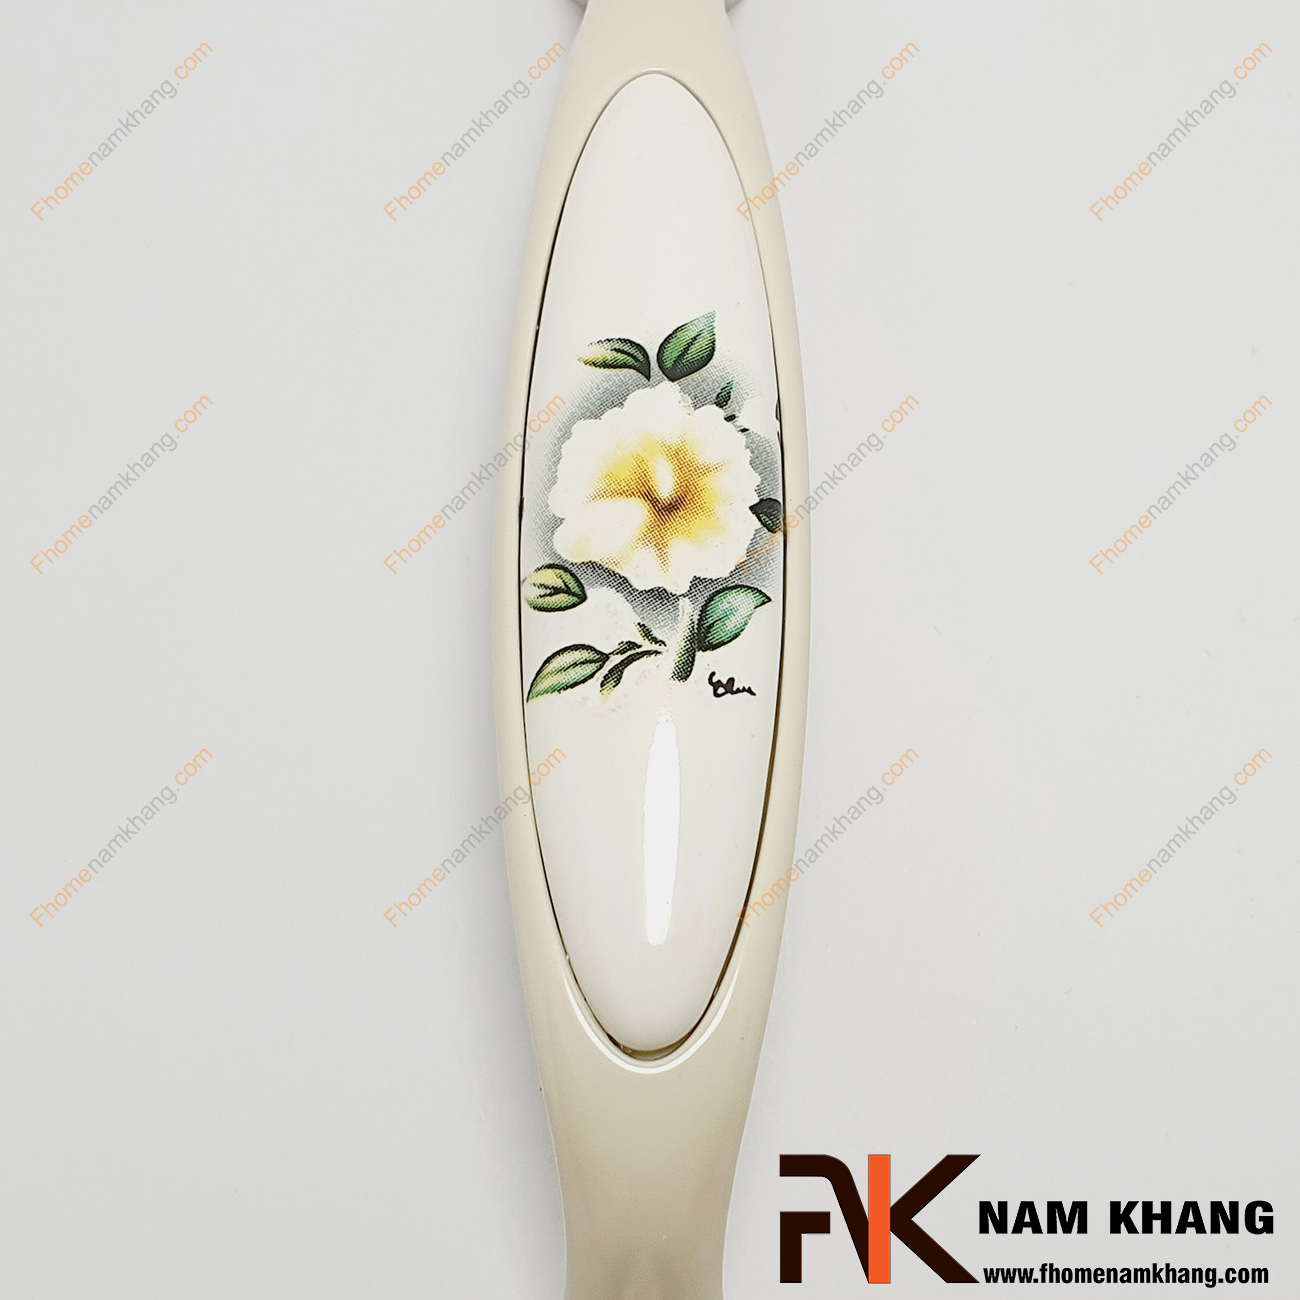 Tay nắm tủ màu trắng phối sứ họa tiết hoa trà NK019-HT, một dạng tay nắm phối sứ cao cấp thường sử dụng trên tủ bếp với thiết kế hợp kim cao cấp bọc viên sứ trắng sử dụng họa tiết hoa trà sang trọng.